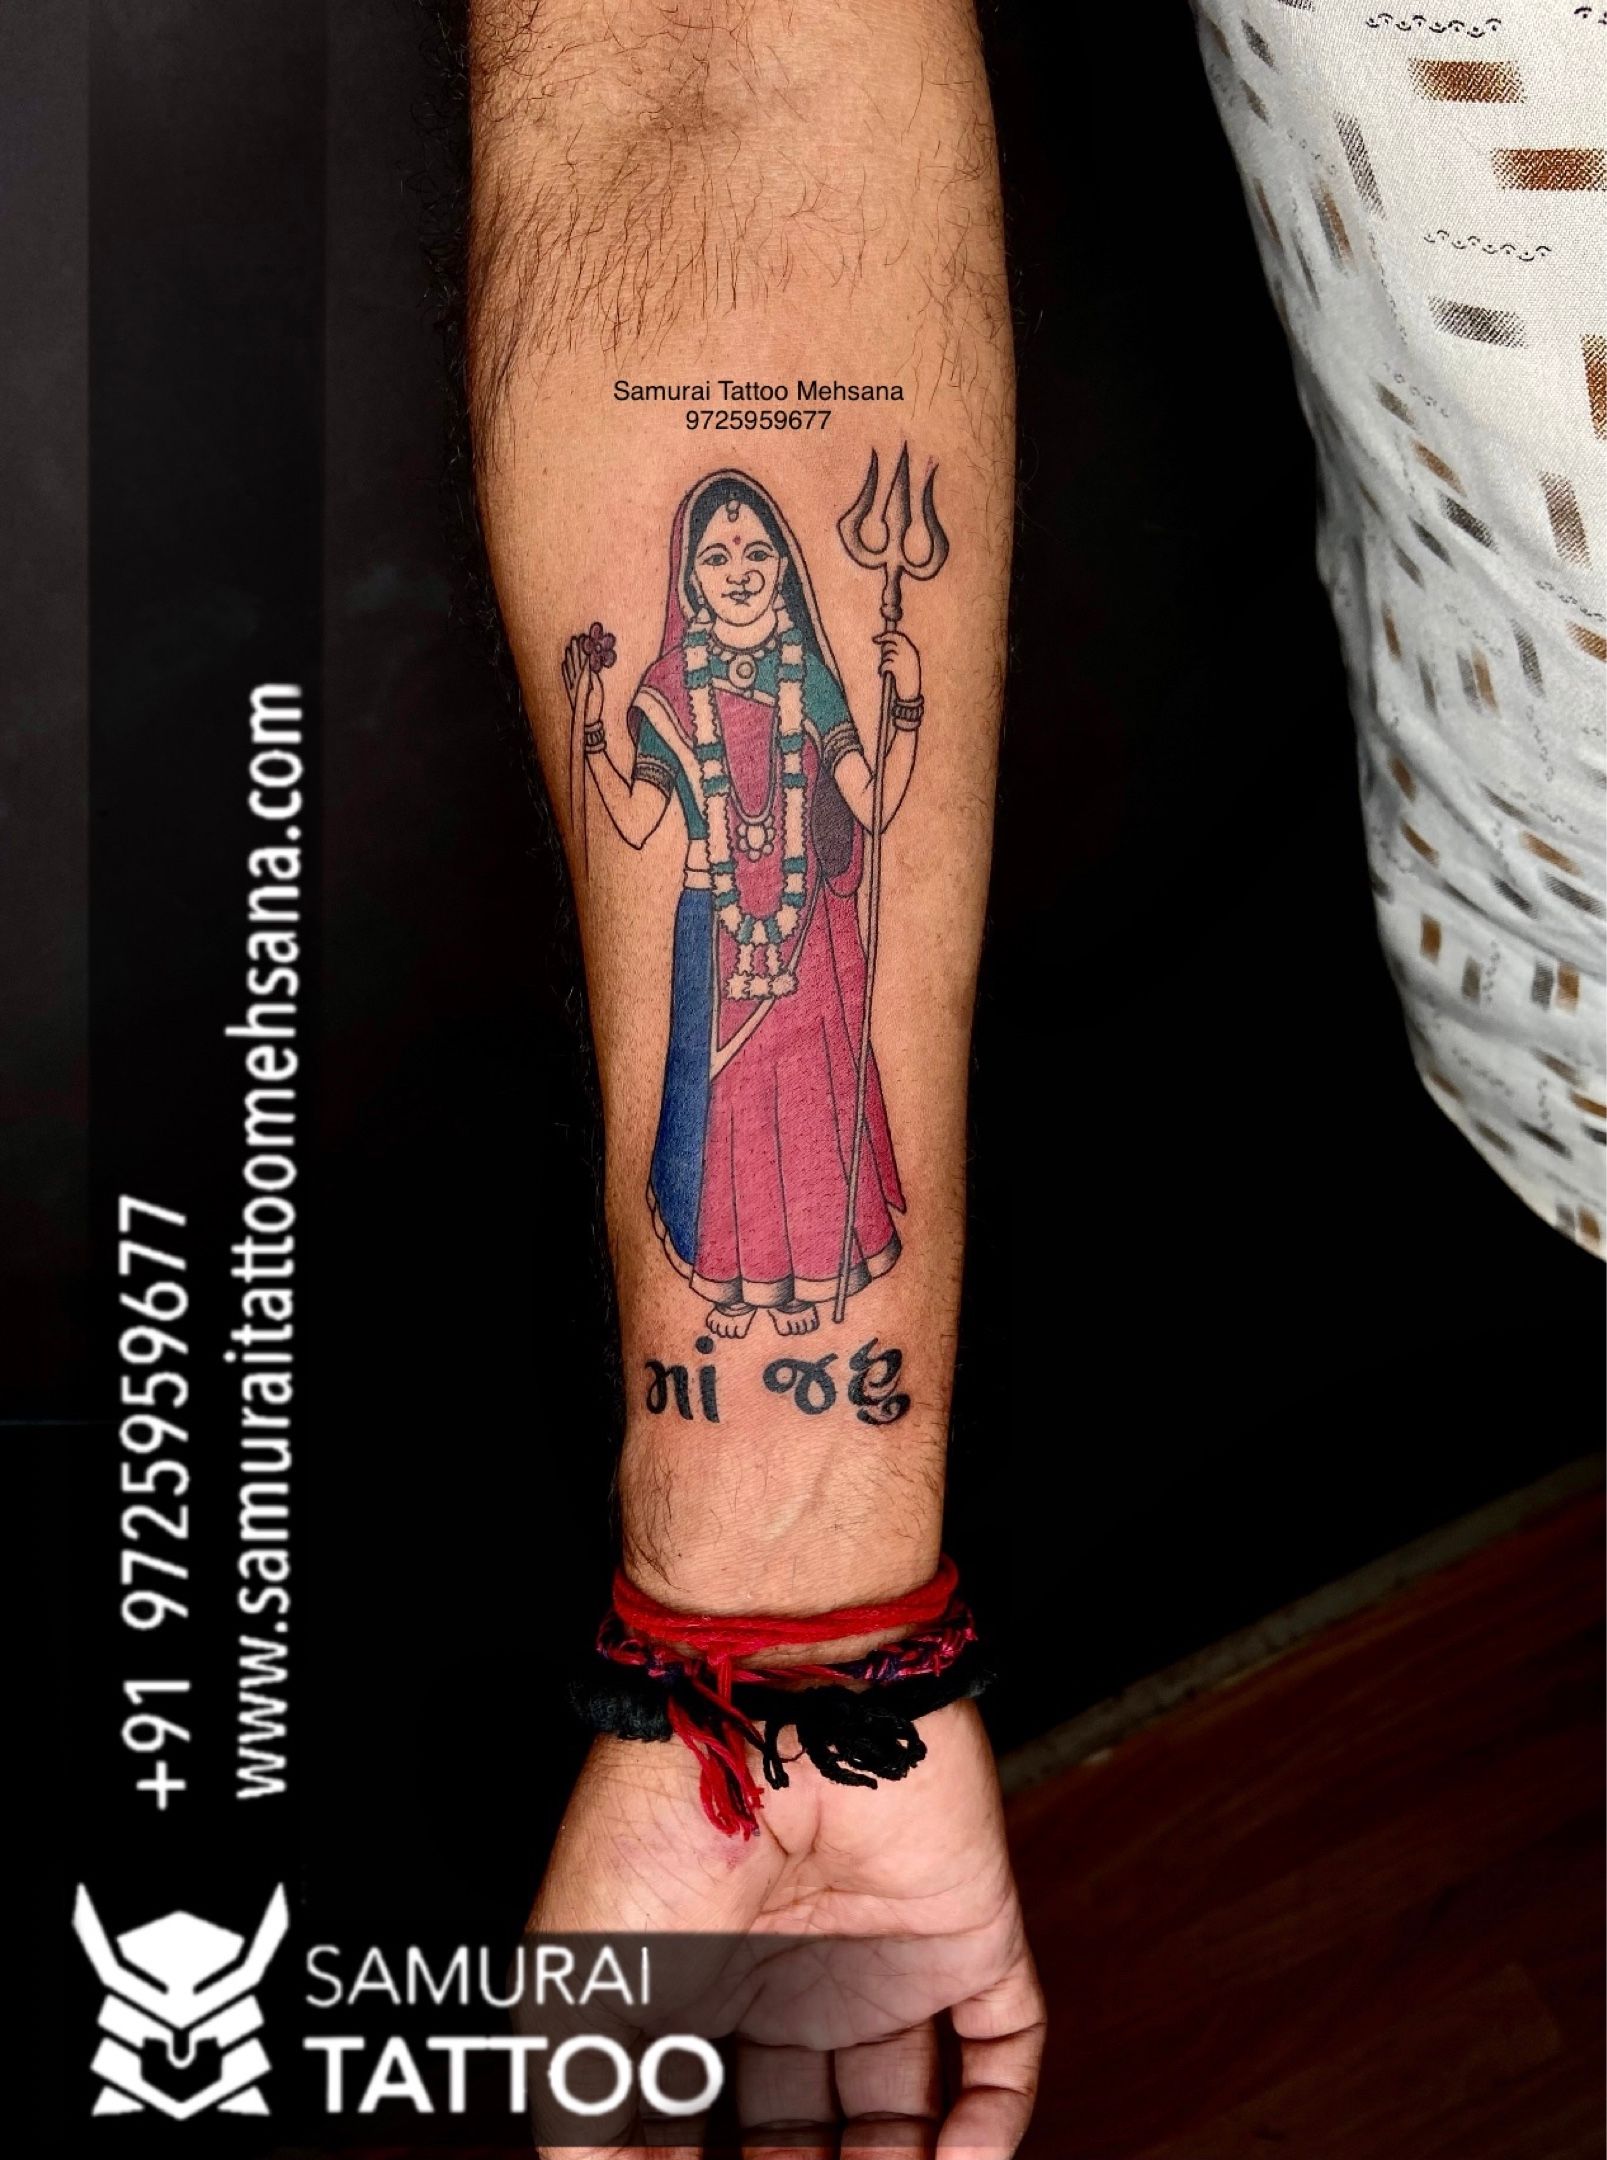 Man's Rajma Chawal Tattoo Has Won Over The Internet